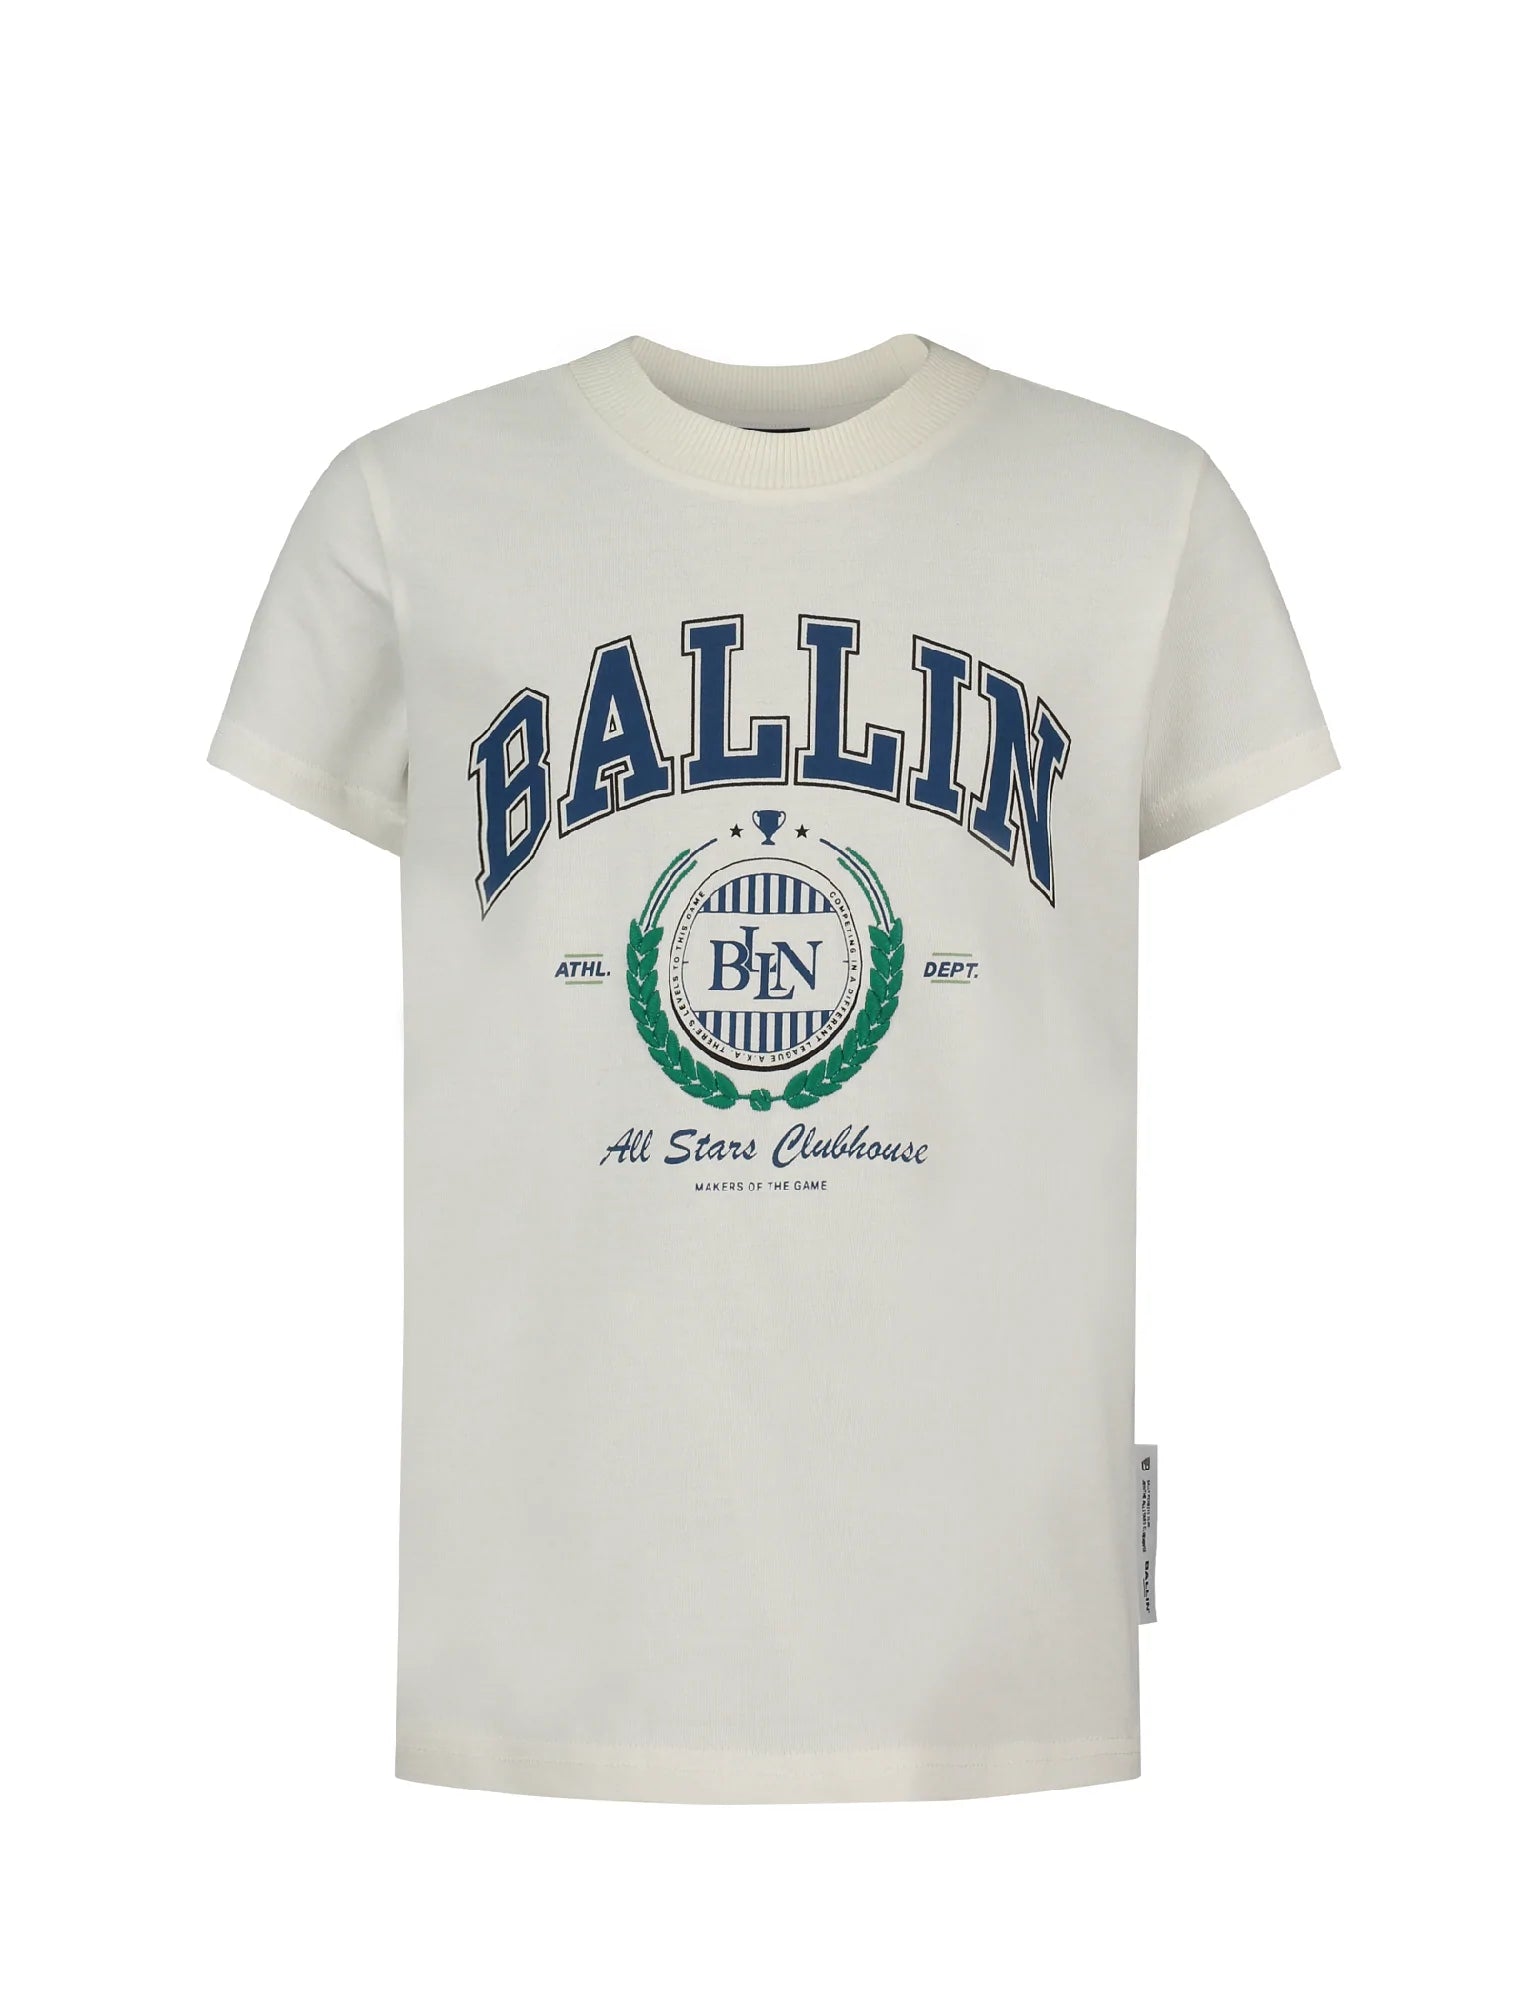 Unisexs T-shirt van Ballin Amsterdam in de kleur Off white in maat 176.